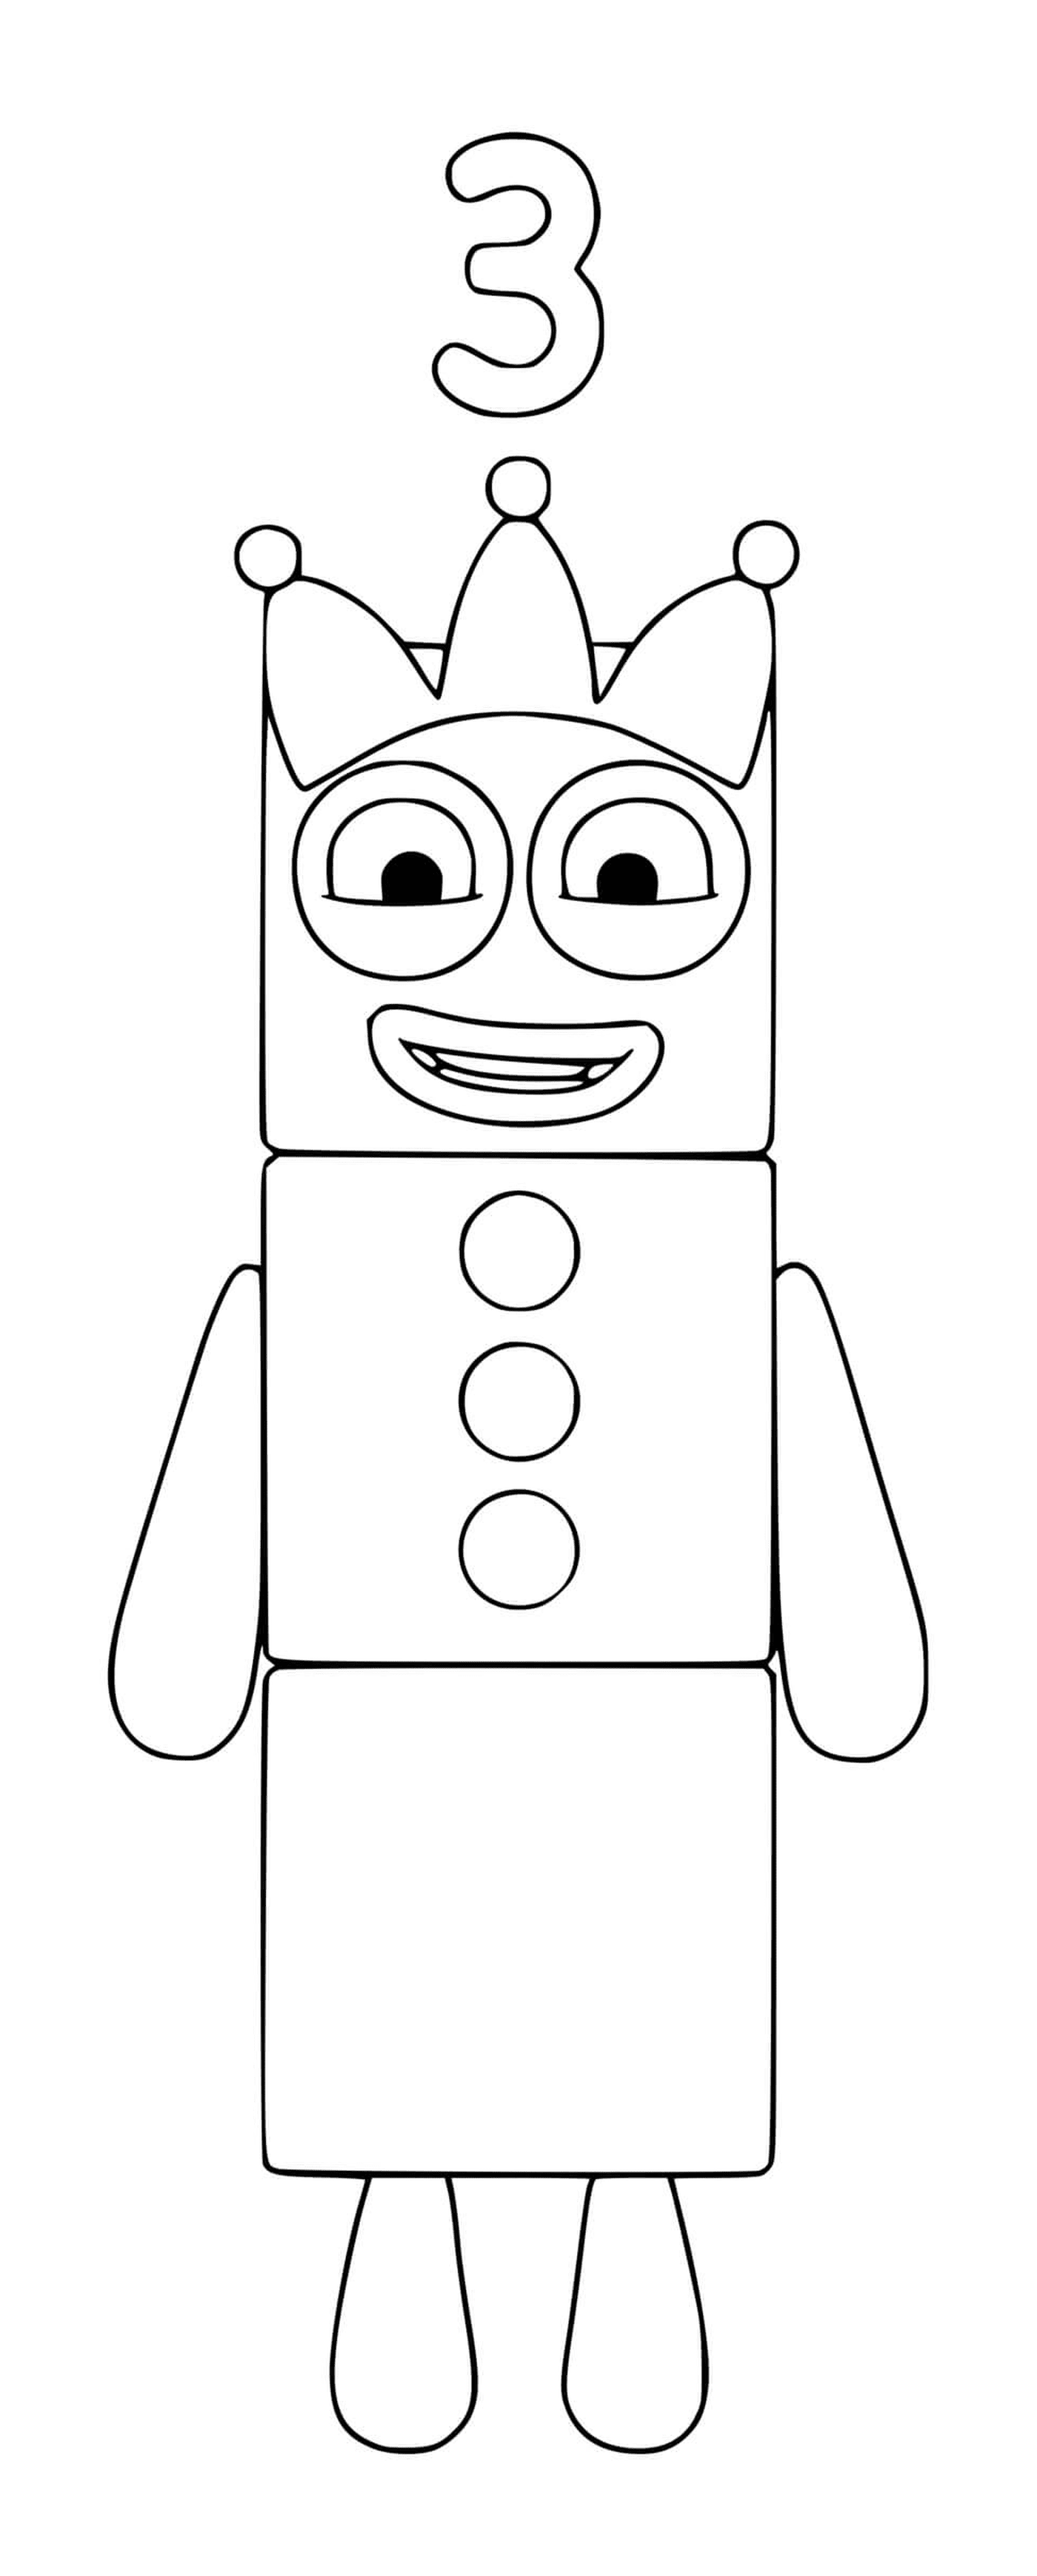  Numberblocks número 3, um robô de brinquedo 